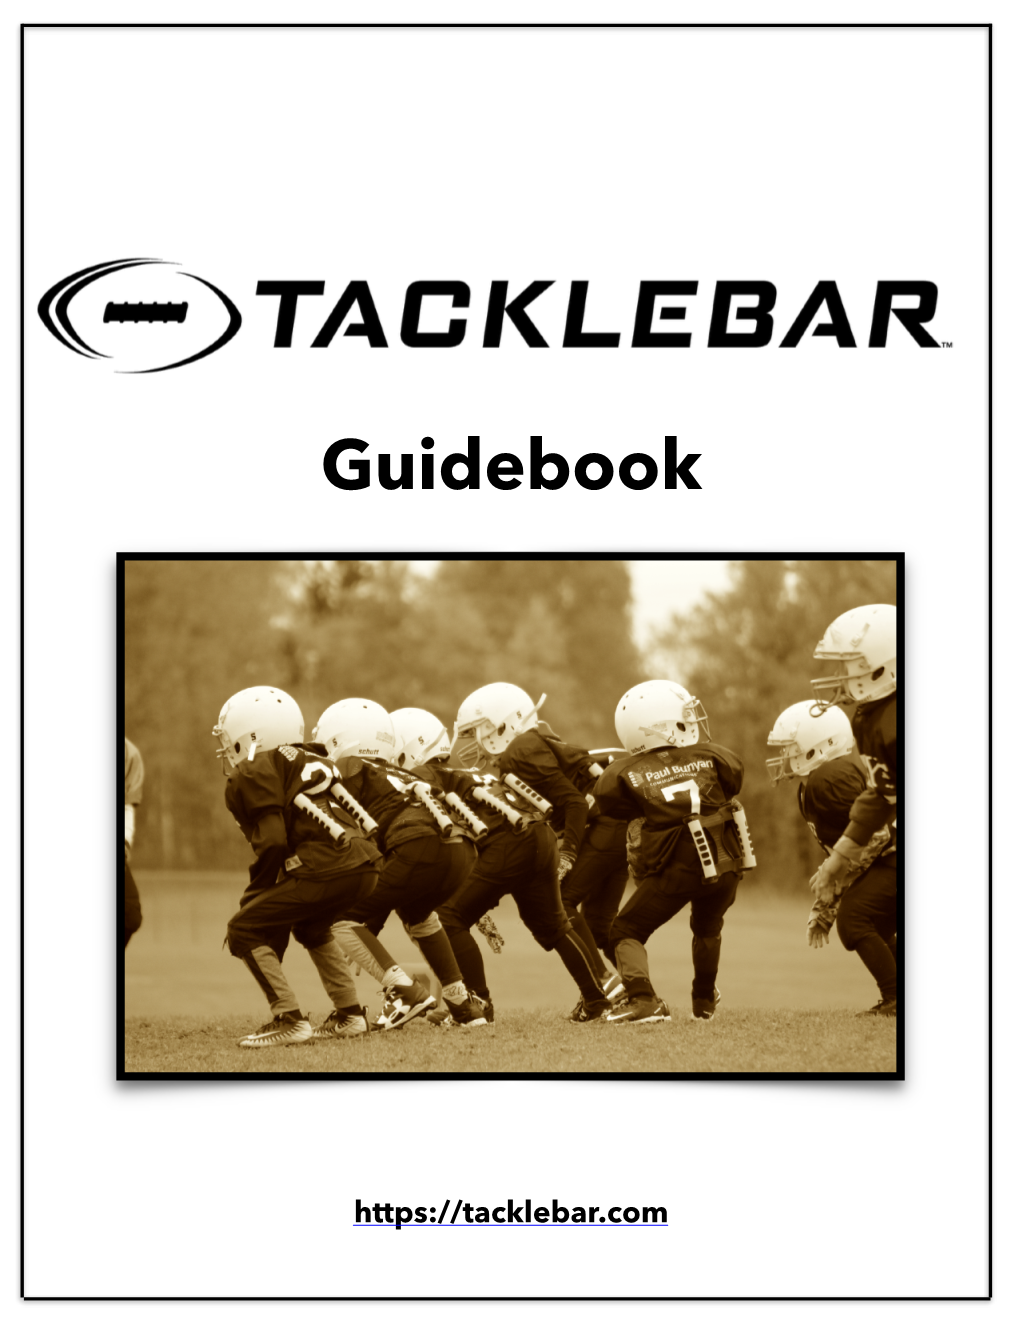 Tacklebar Guidebook